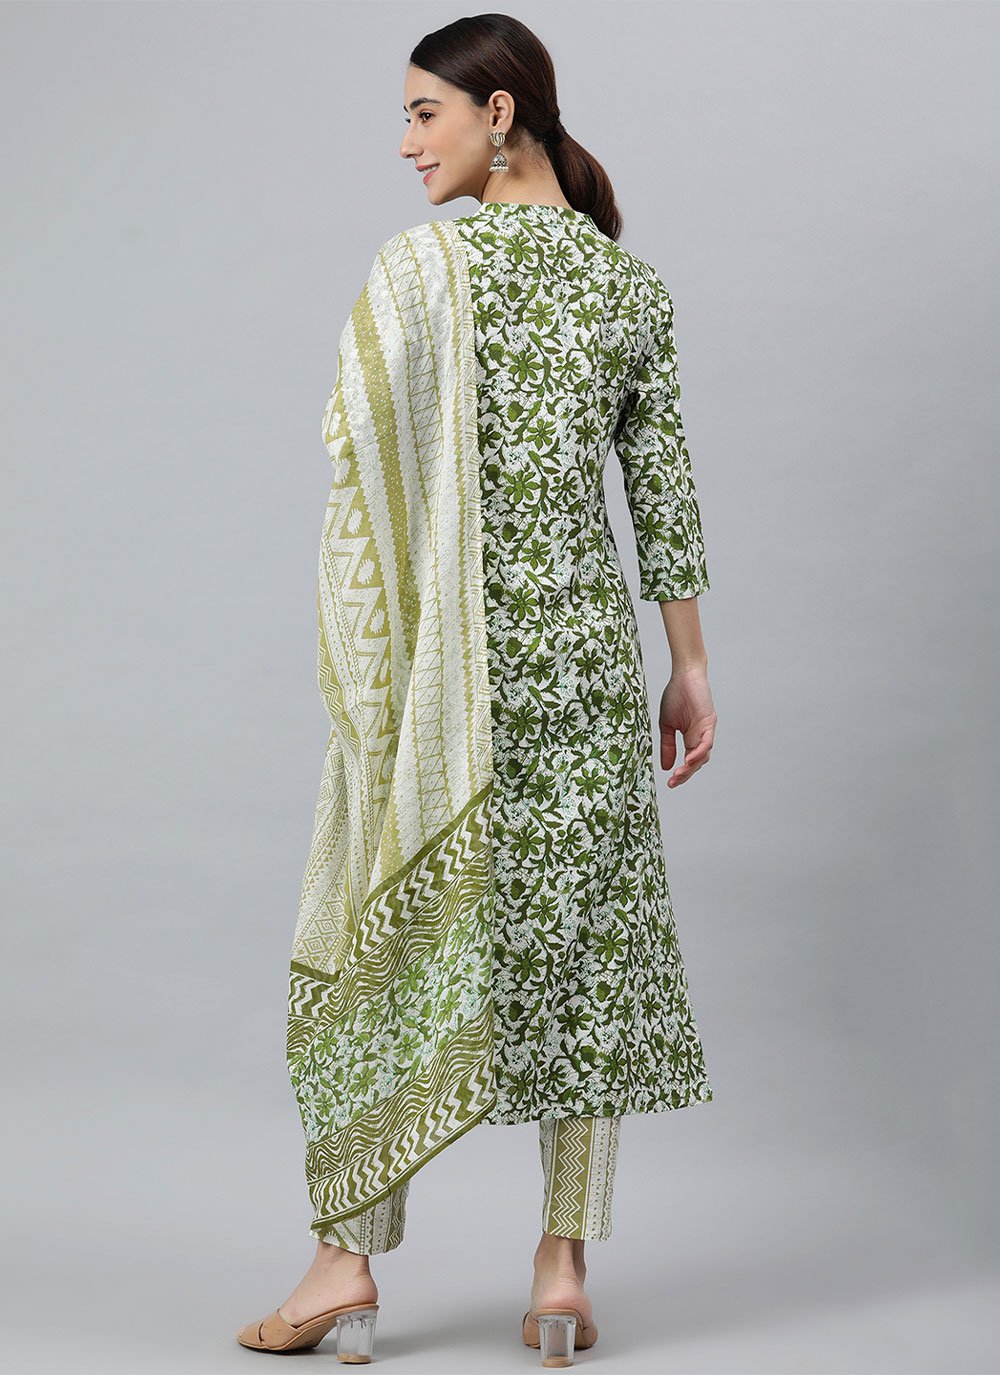 Salwar Suit Rayon Green Floral Patch Salwar Kameez